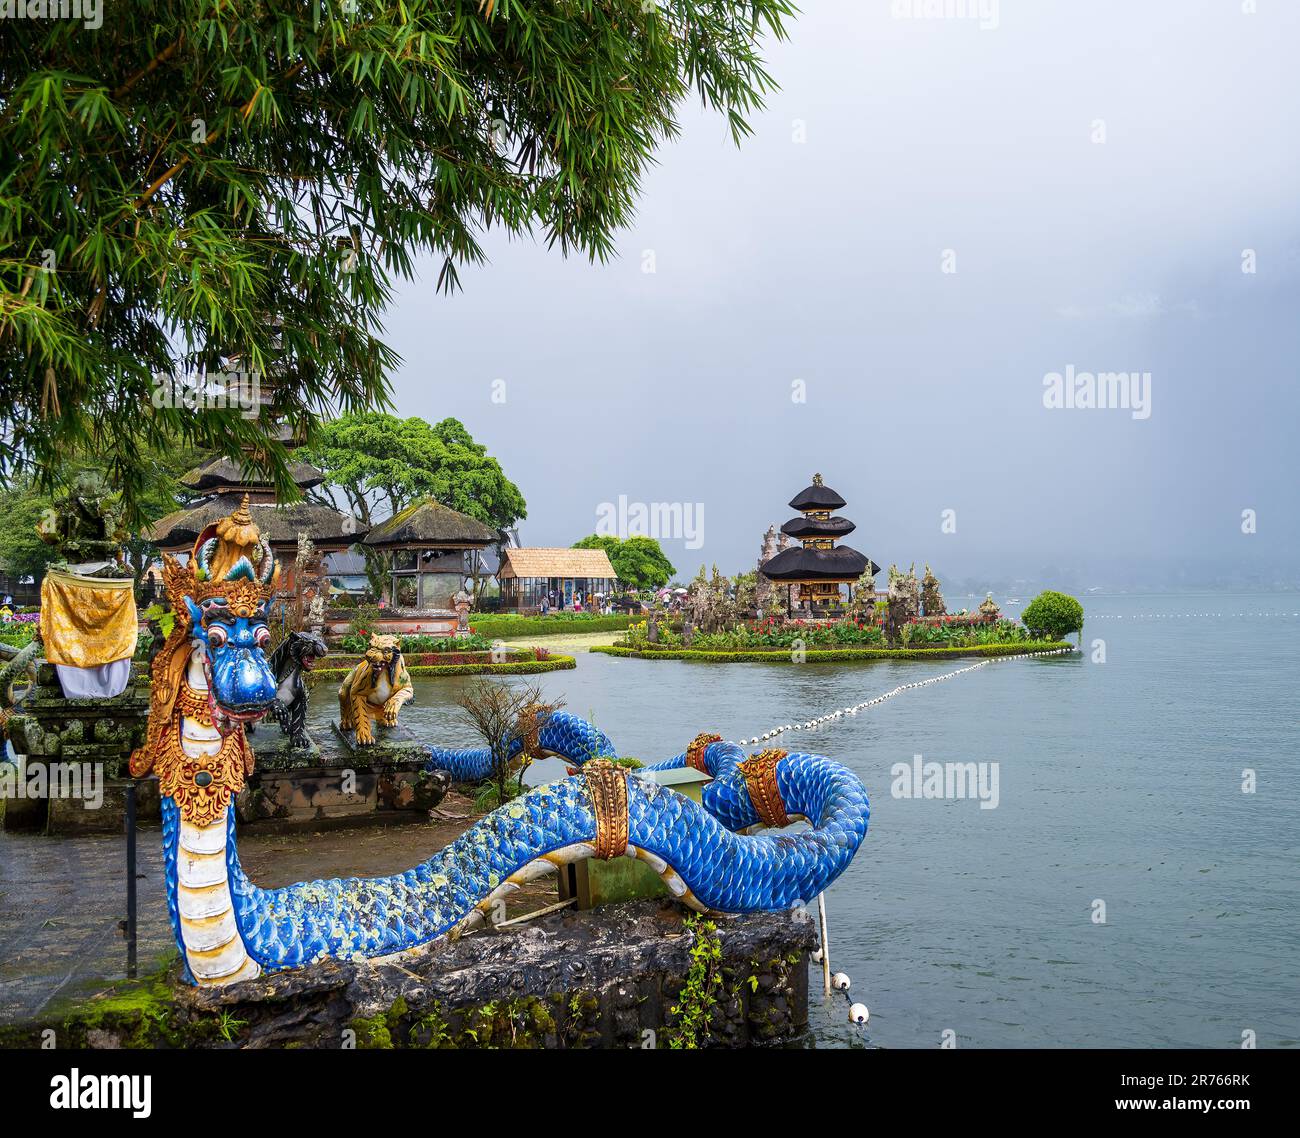 Eine wild aussehende Seeschlange bewacht das Gelände des Ulun Danu Tempels Stockfoto